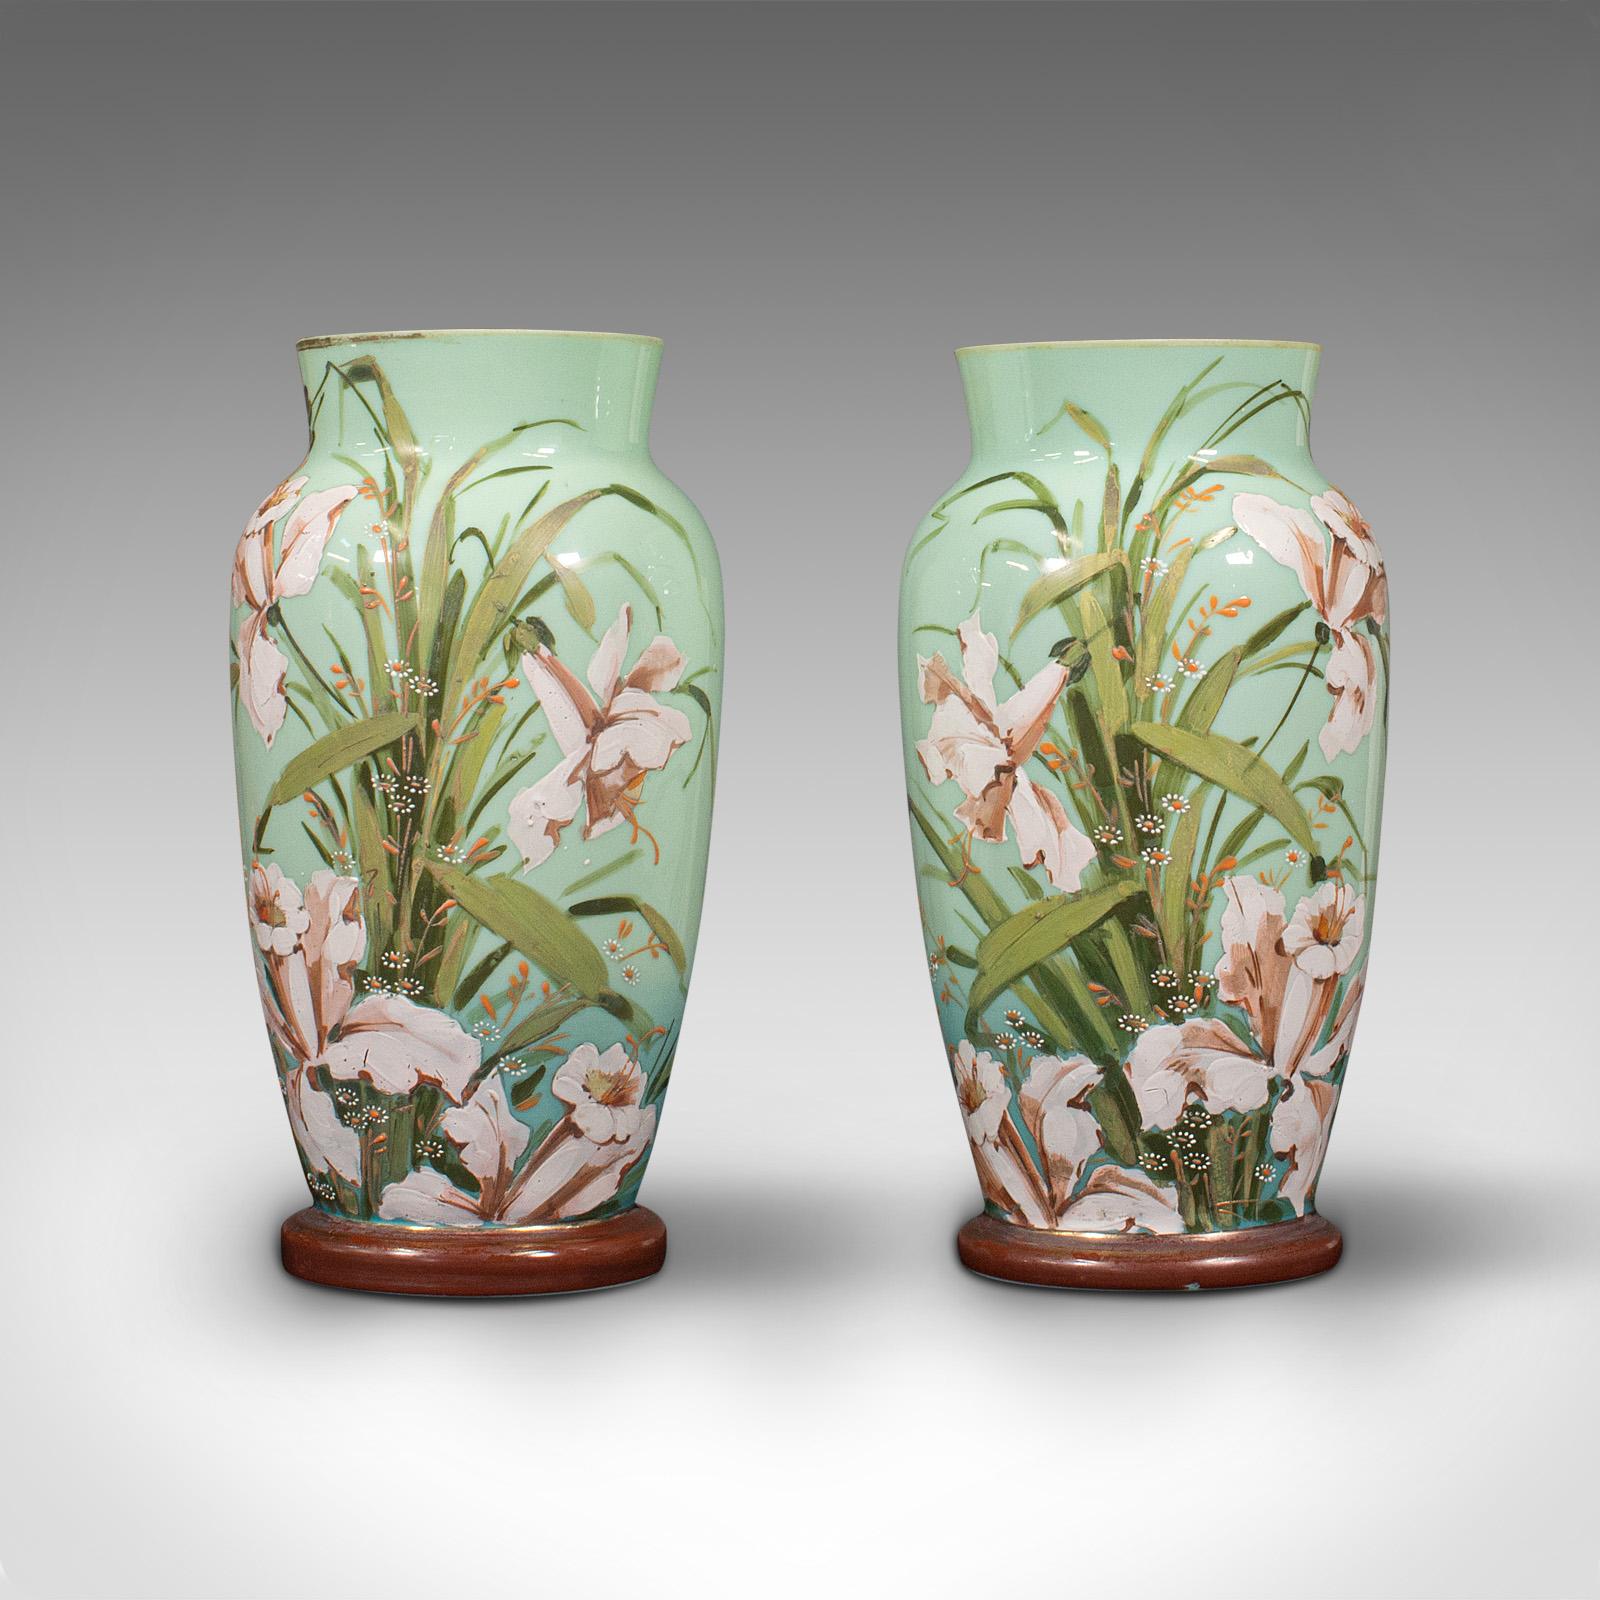 Il s'agit d'une paire de vases décoratifs anciens. Un balustre continental en verre opaque, datant de la fin de la période victorienne, vers 1900.

Palette de couleurs attrayantes, peintes à la main sur le verre
Présente une patine d'usage